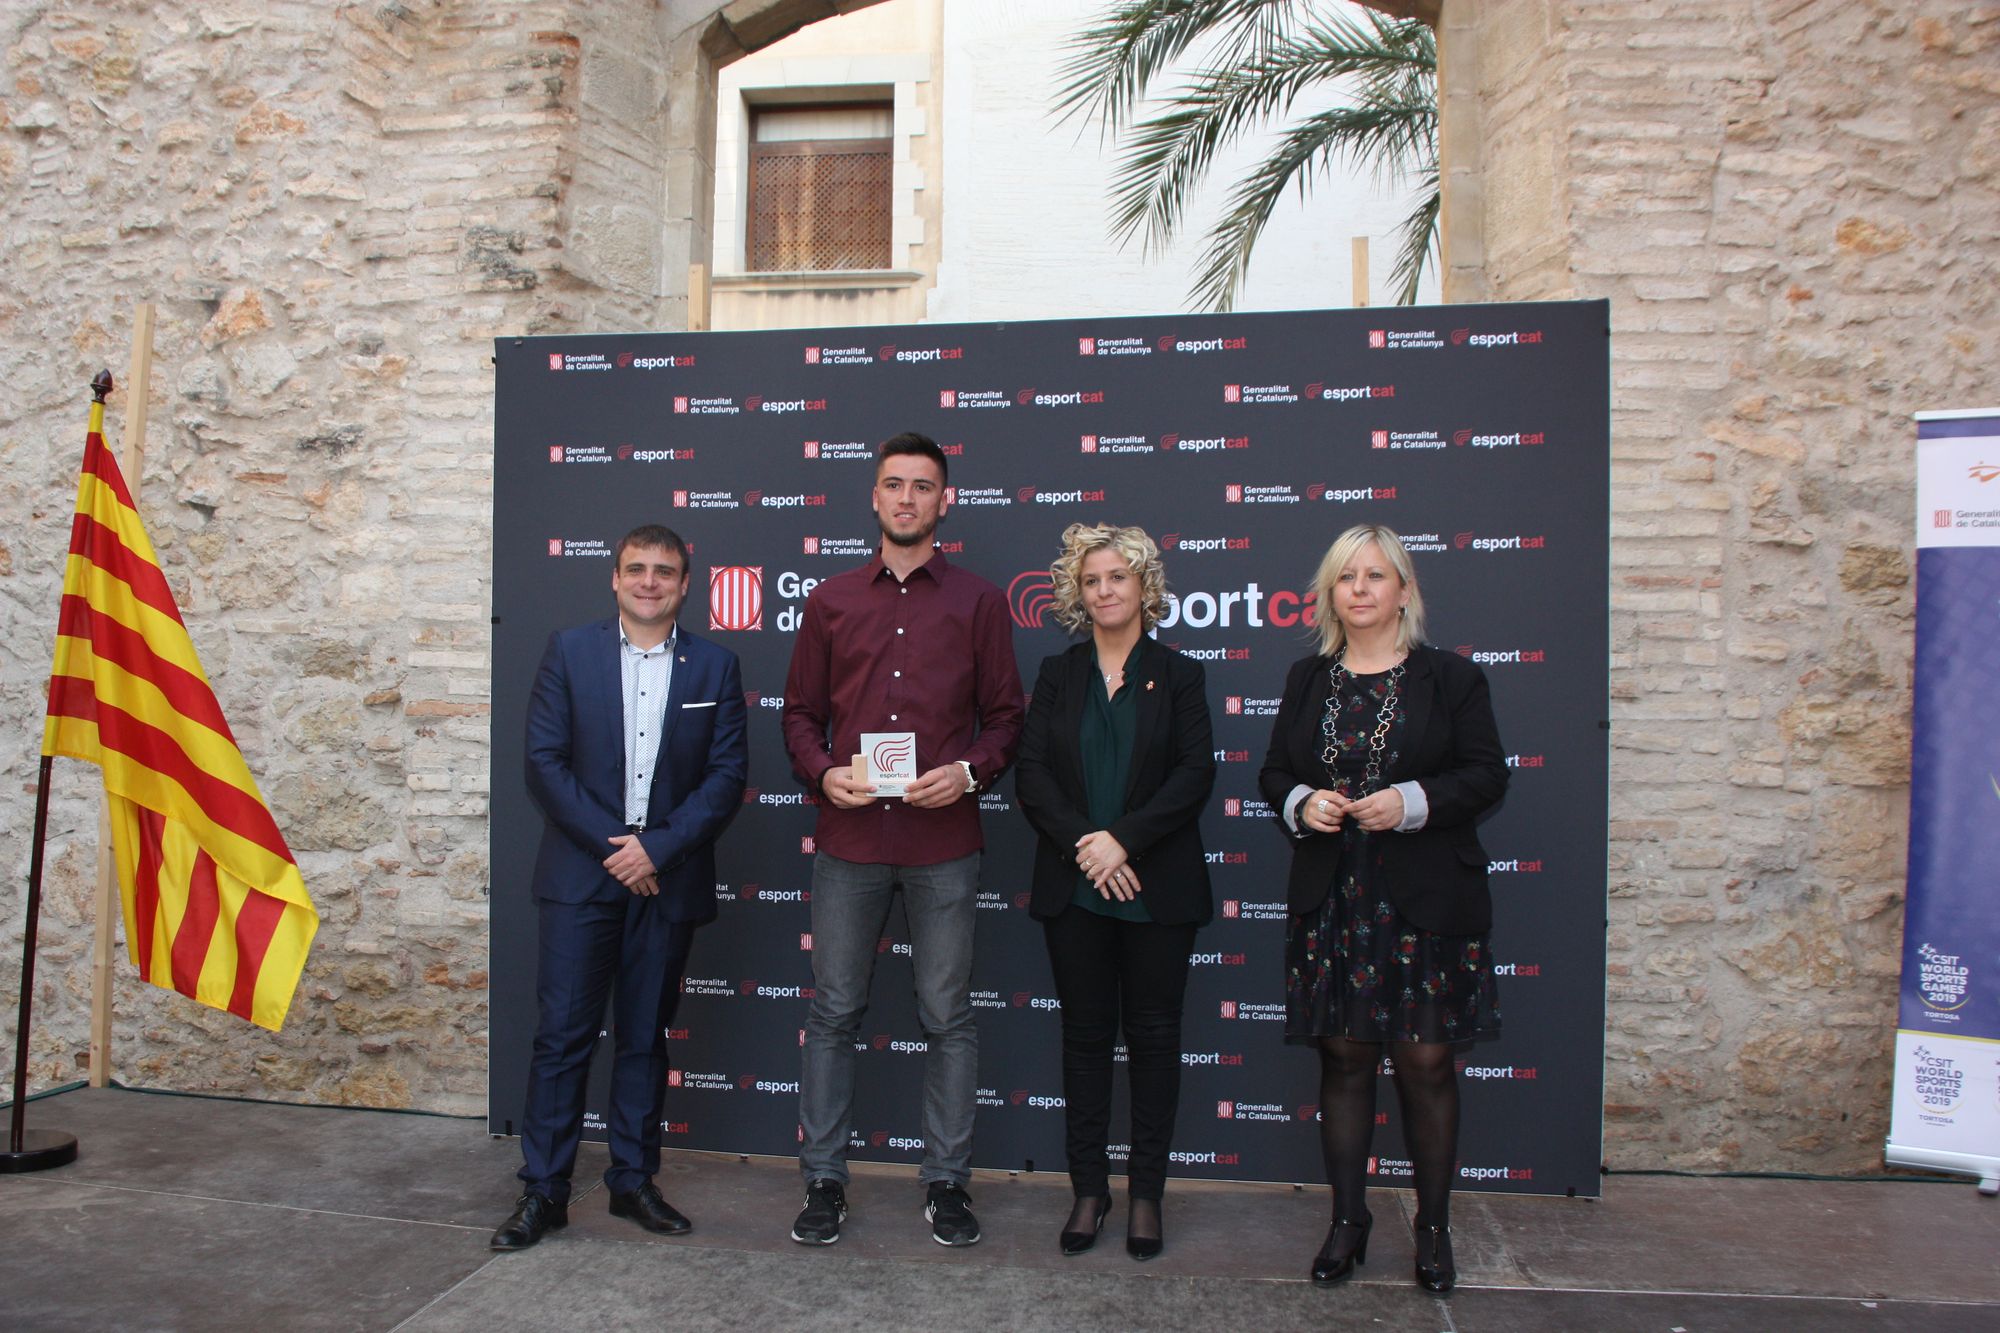 Lliurament dels Premis Esportius de la Generalitat de Catalunya a les Terres de l’Ebre